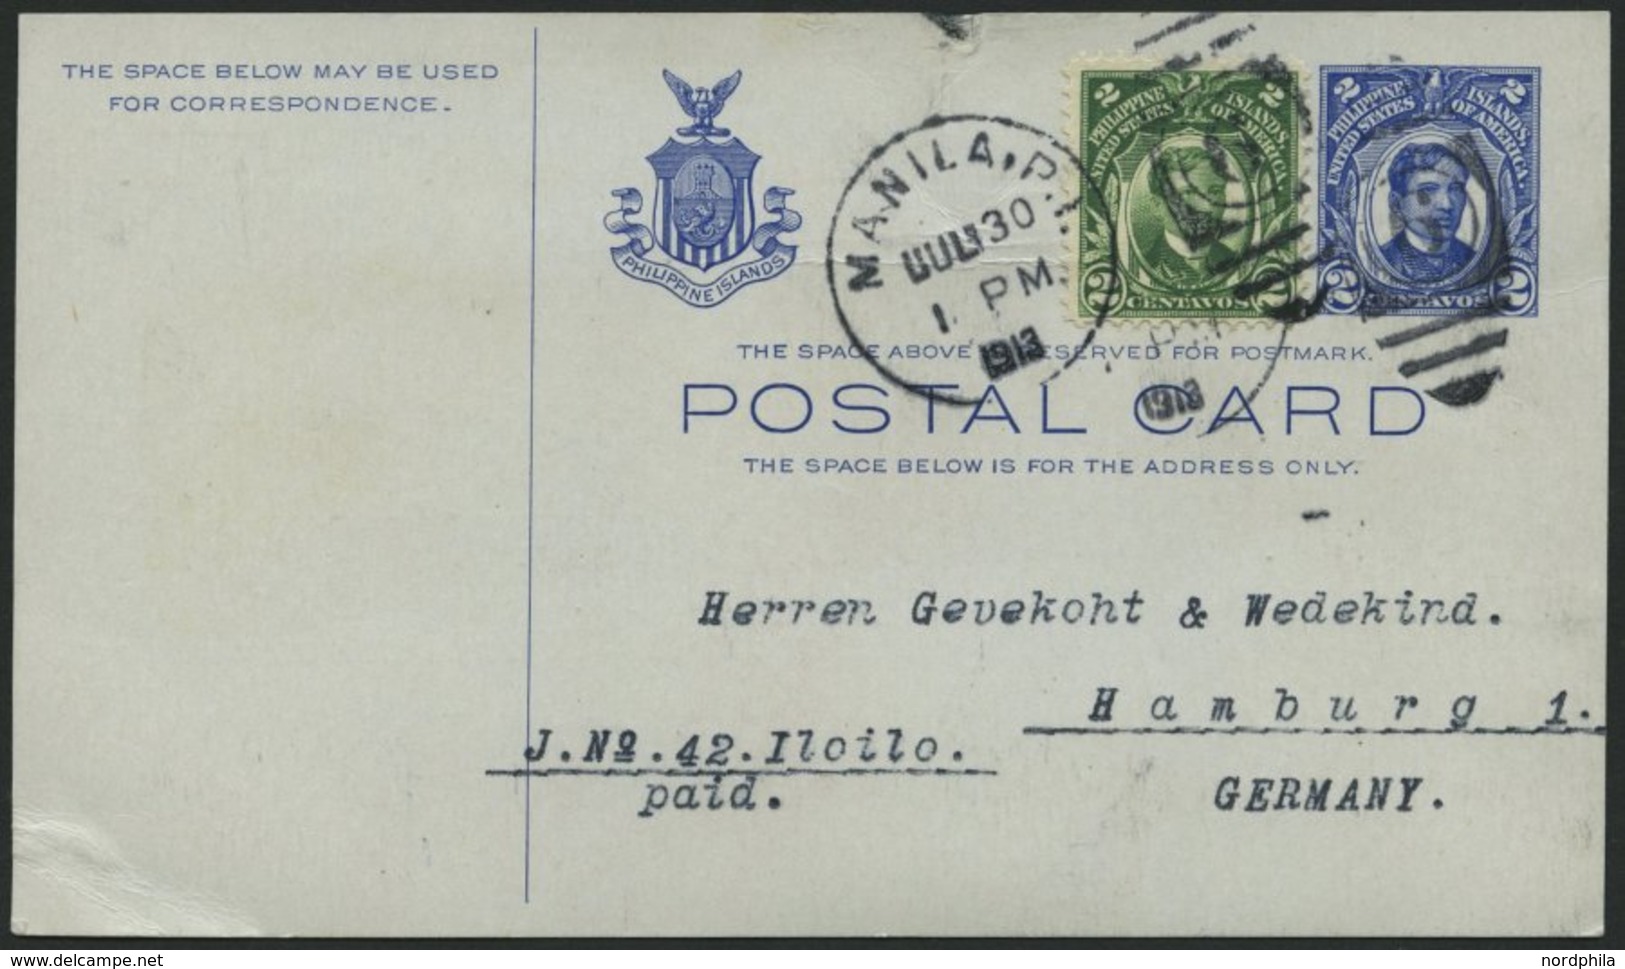 PHILIPPINEN 275 BRIEF, 1913, 2 C. Rizal Als Zusatzfrankatur Auf 2 C. Ganzsachenkarte Nach Hamburg, Pracht - Filippine